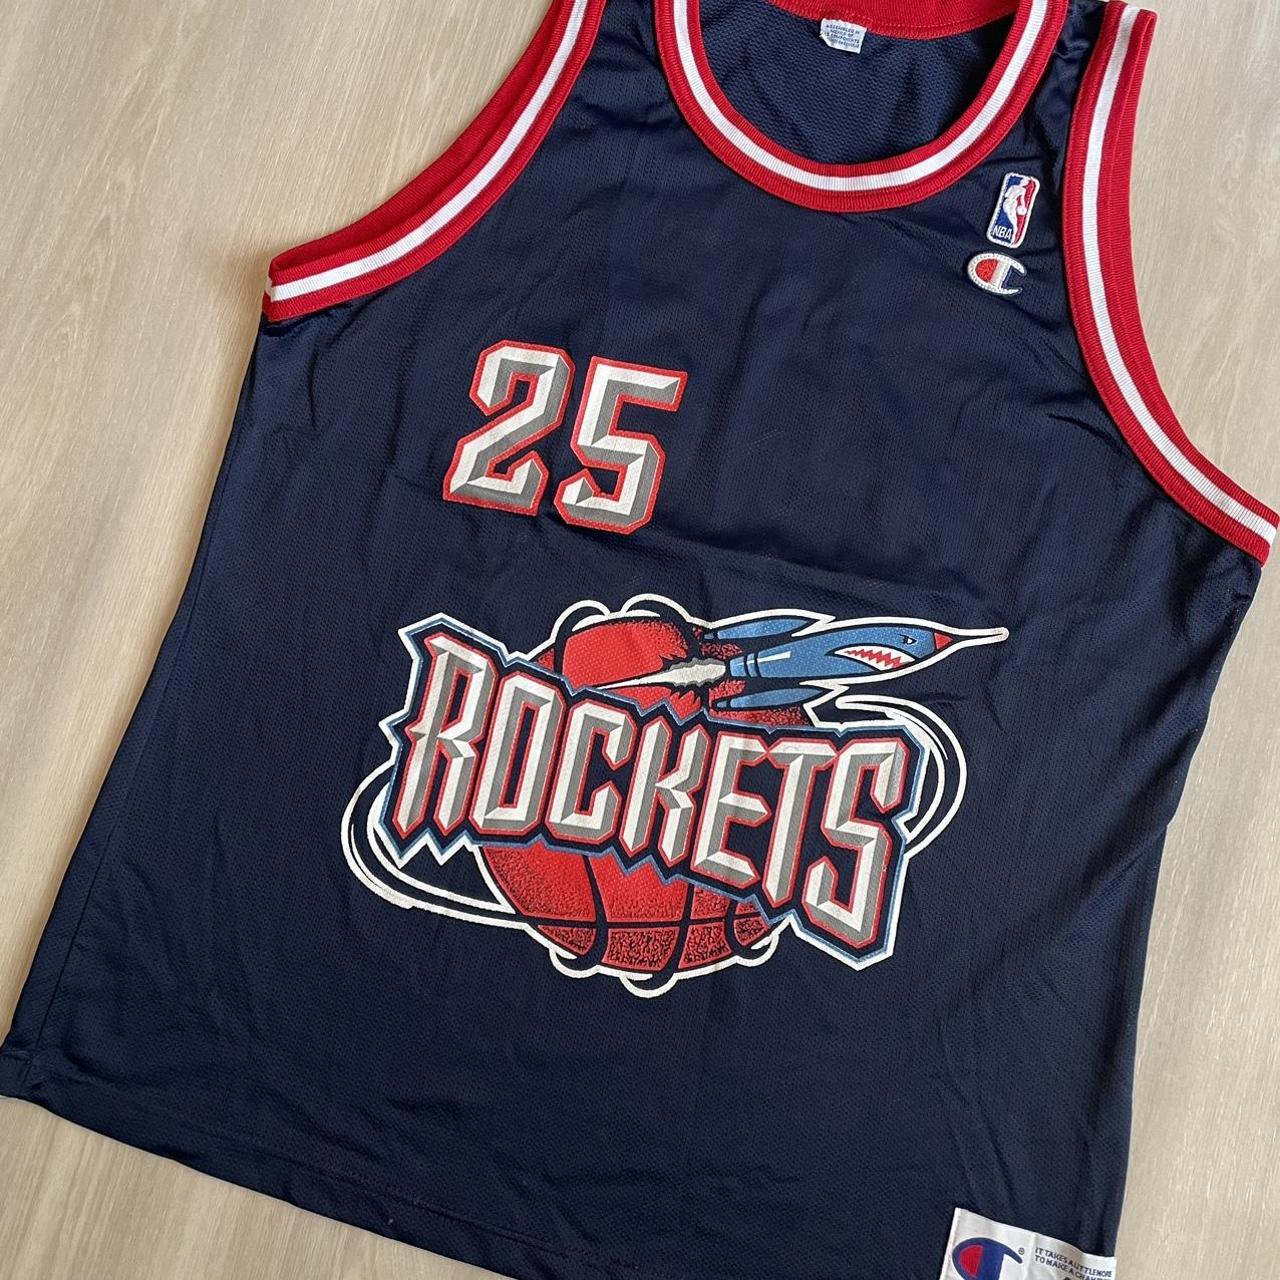 90's rockets jersey